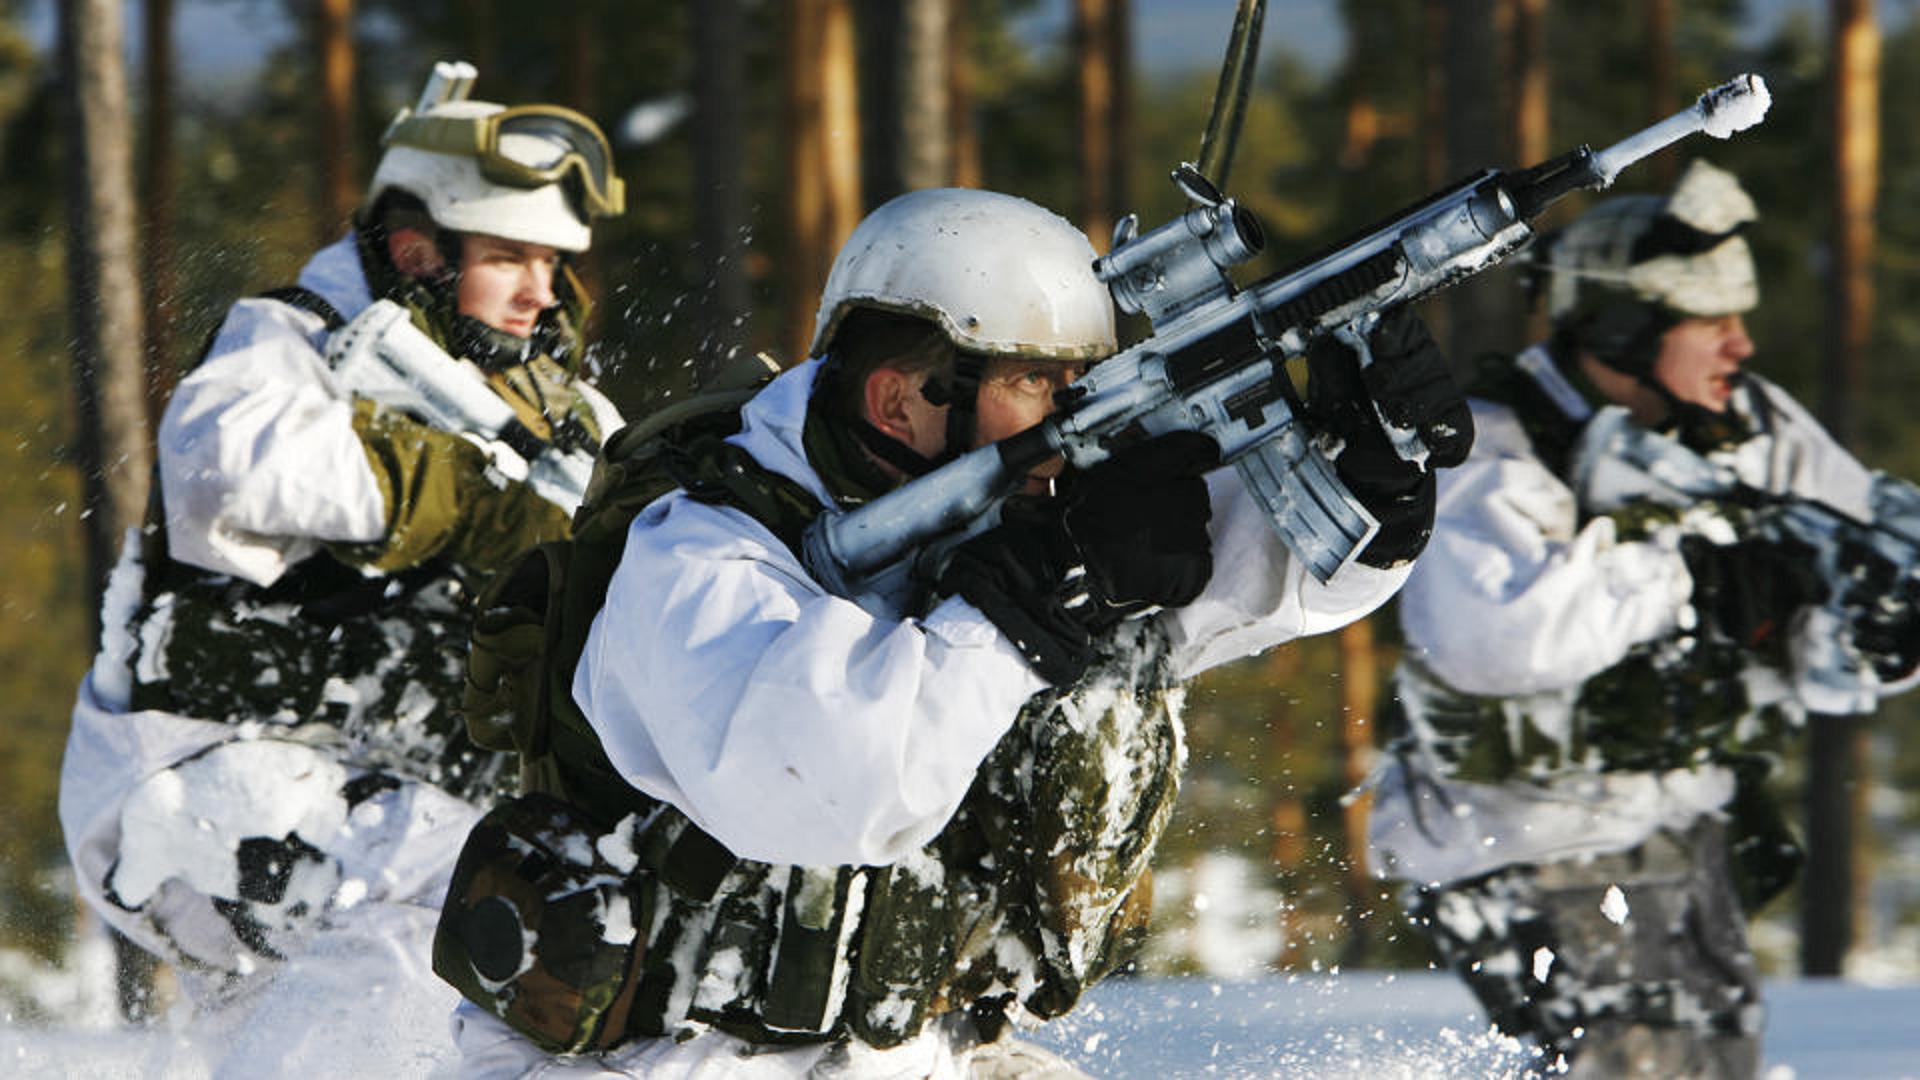 military, soldier, firearm, gun, rifle, snow